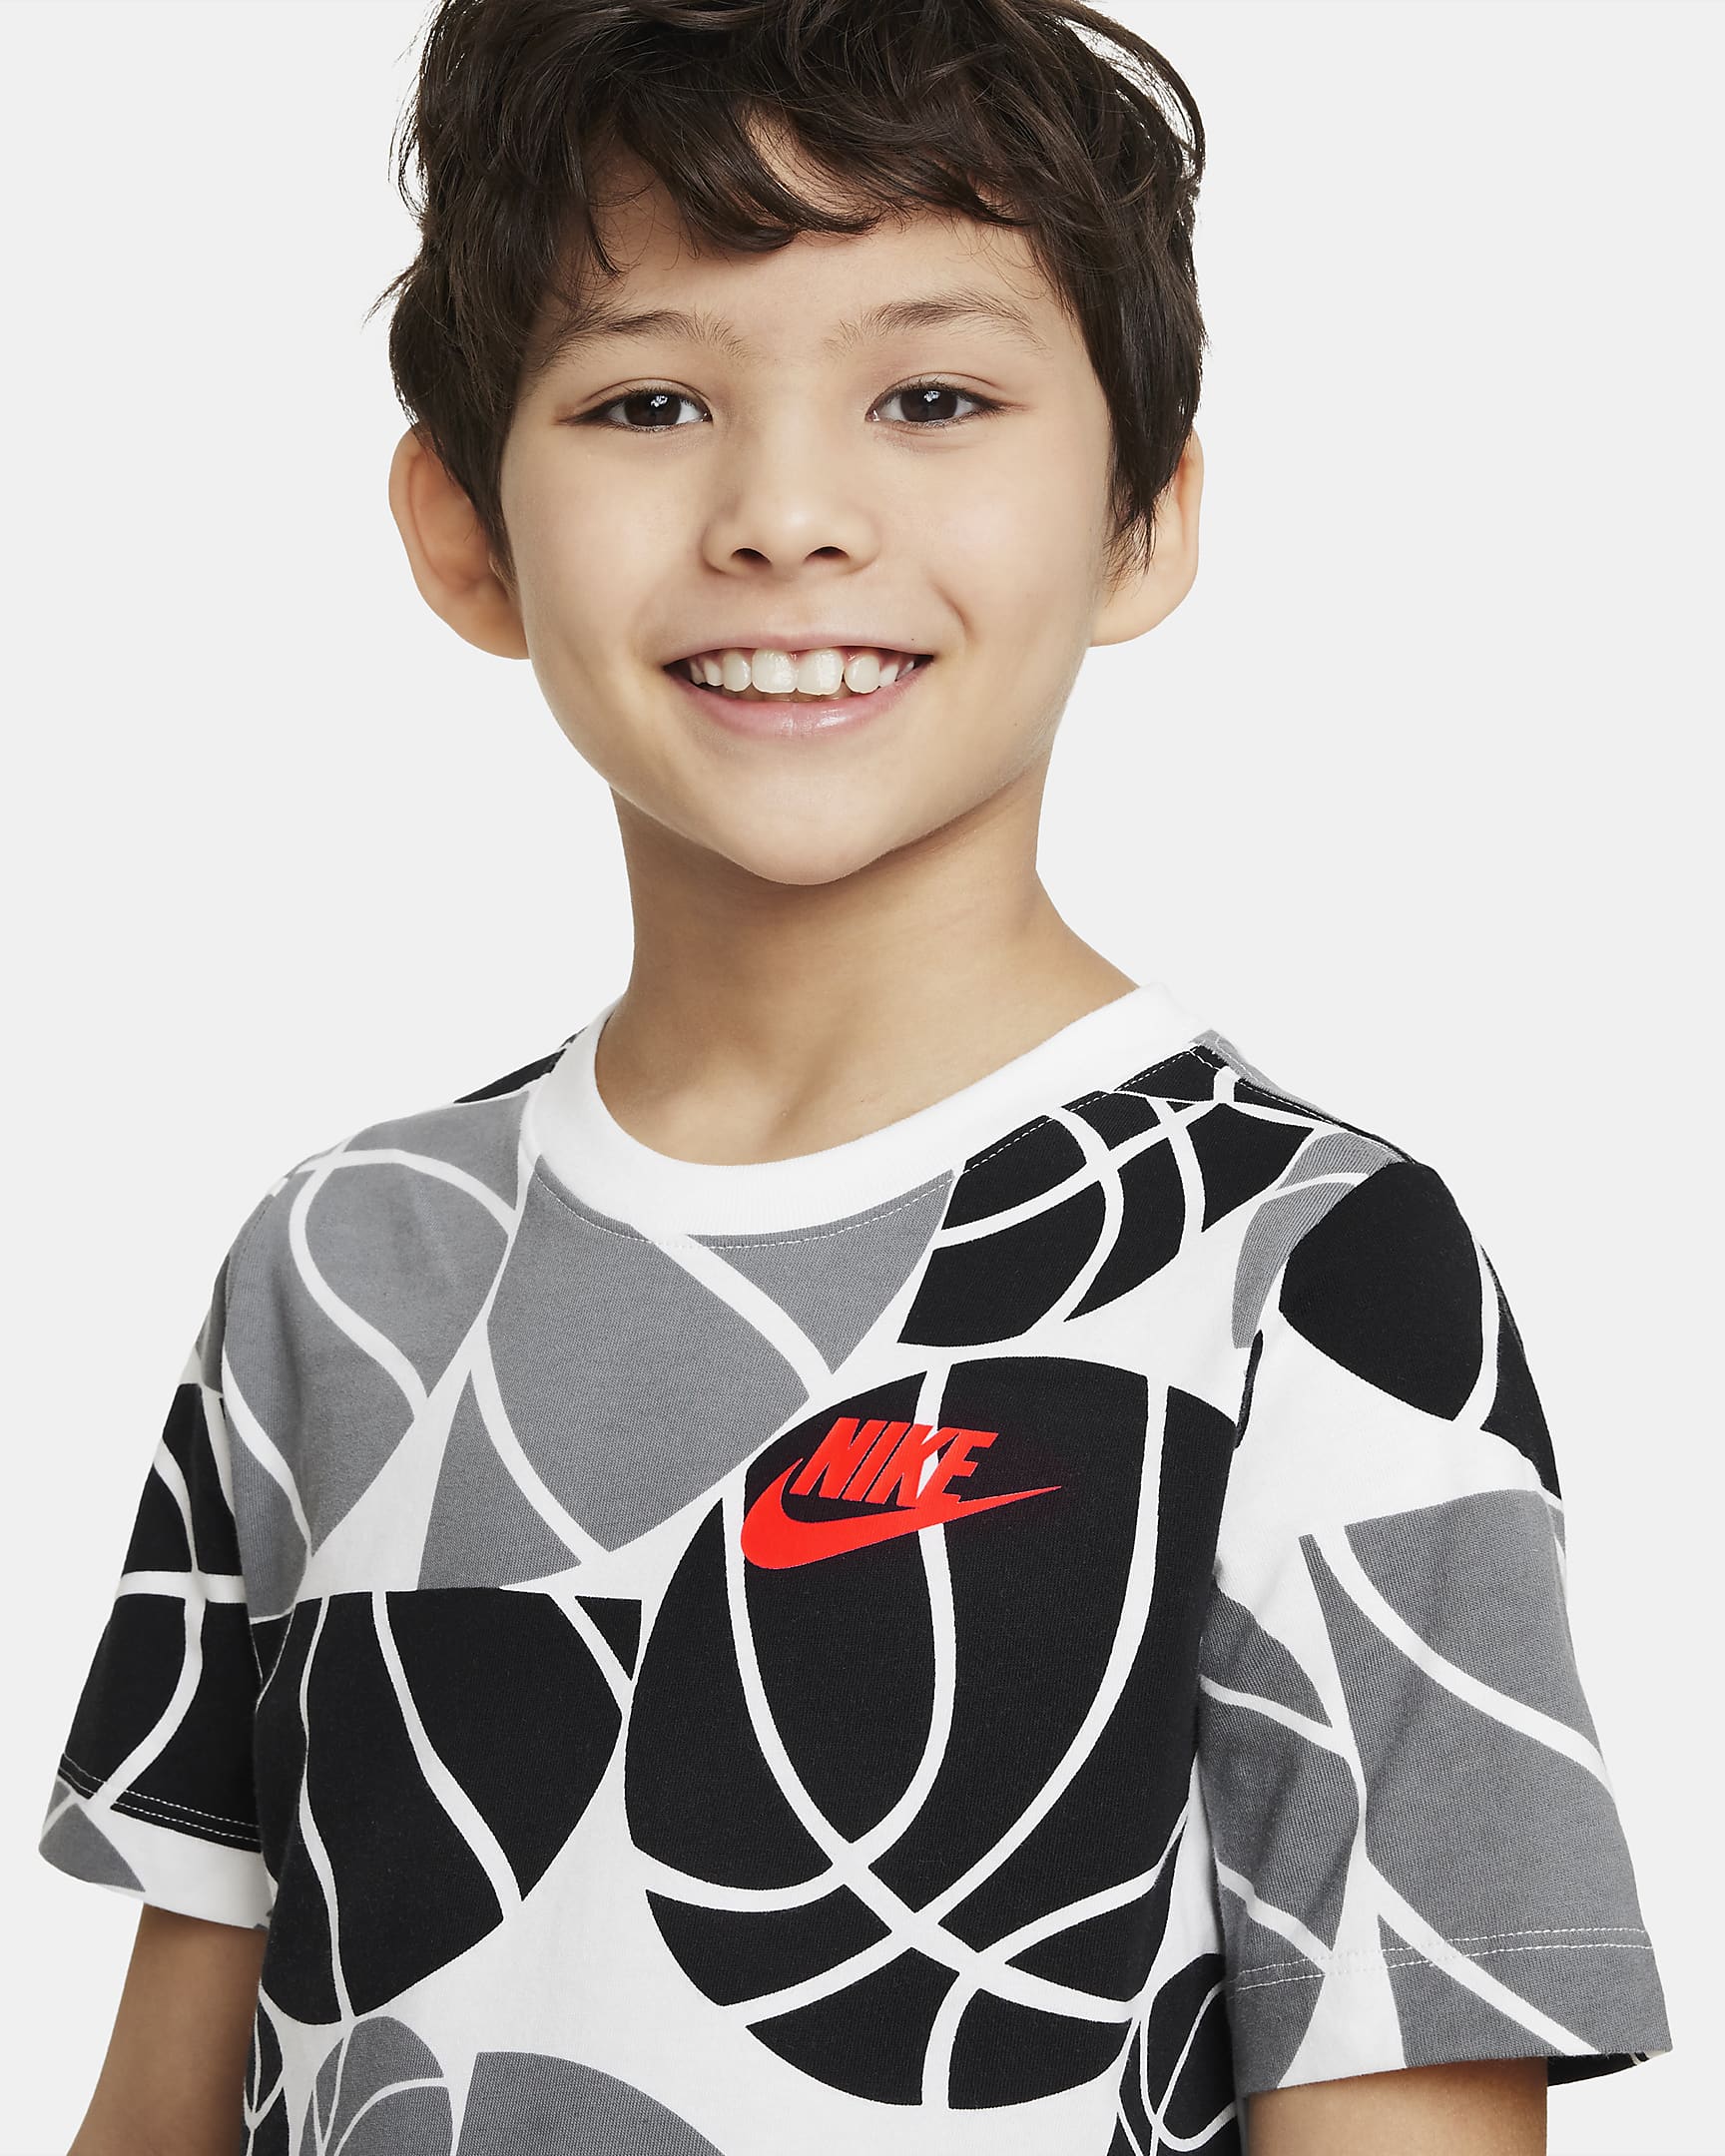 Nike Sportswear Culture of Basketball Older Kids' (Boys') T-Shirt. Nike IN